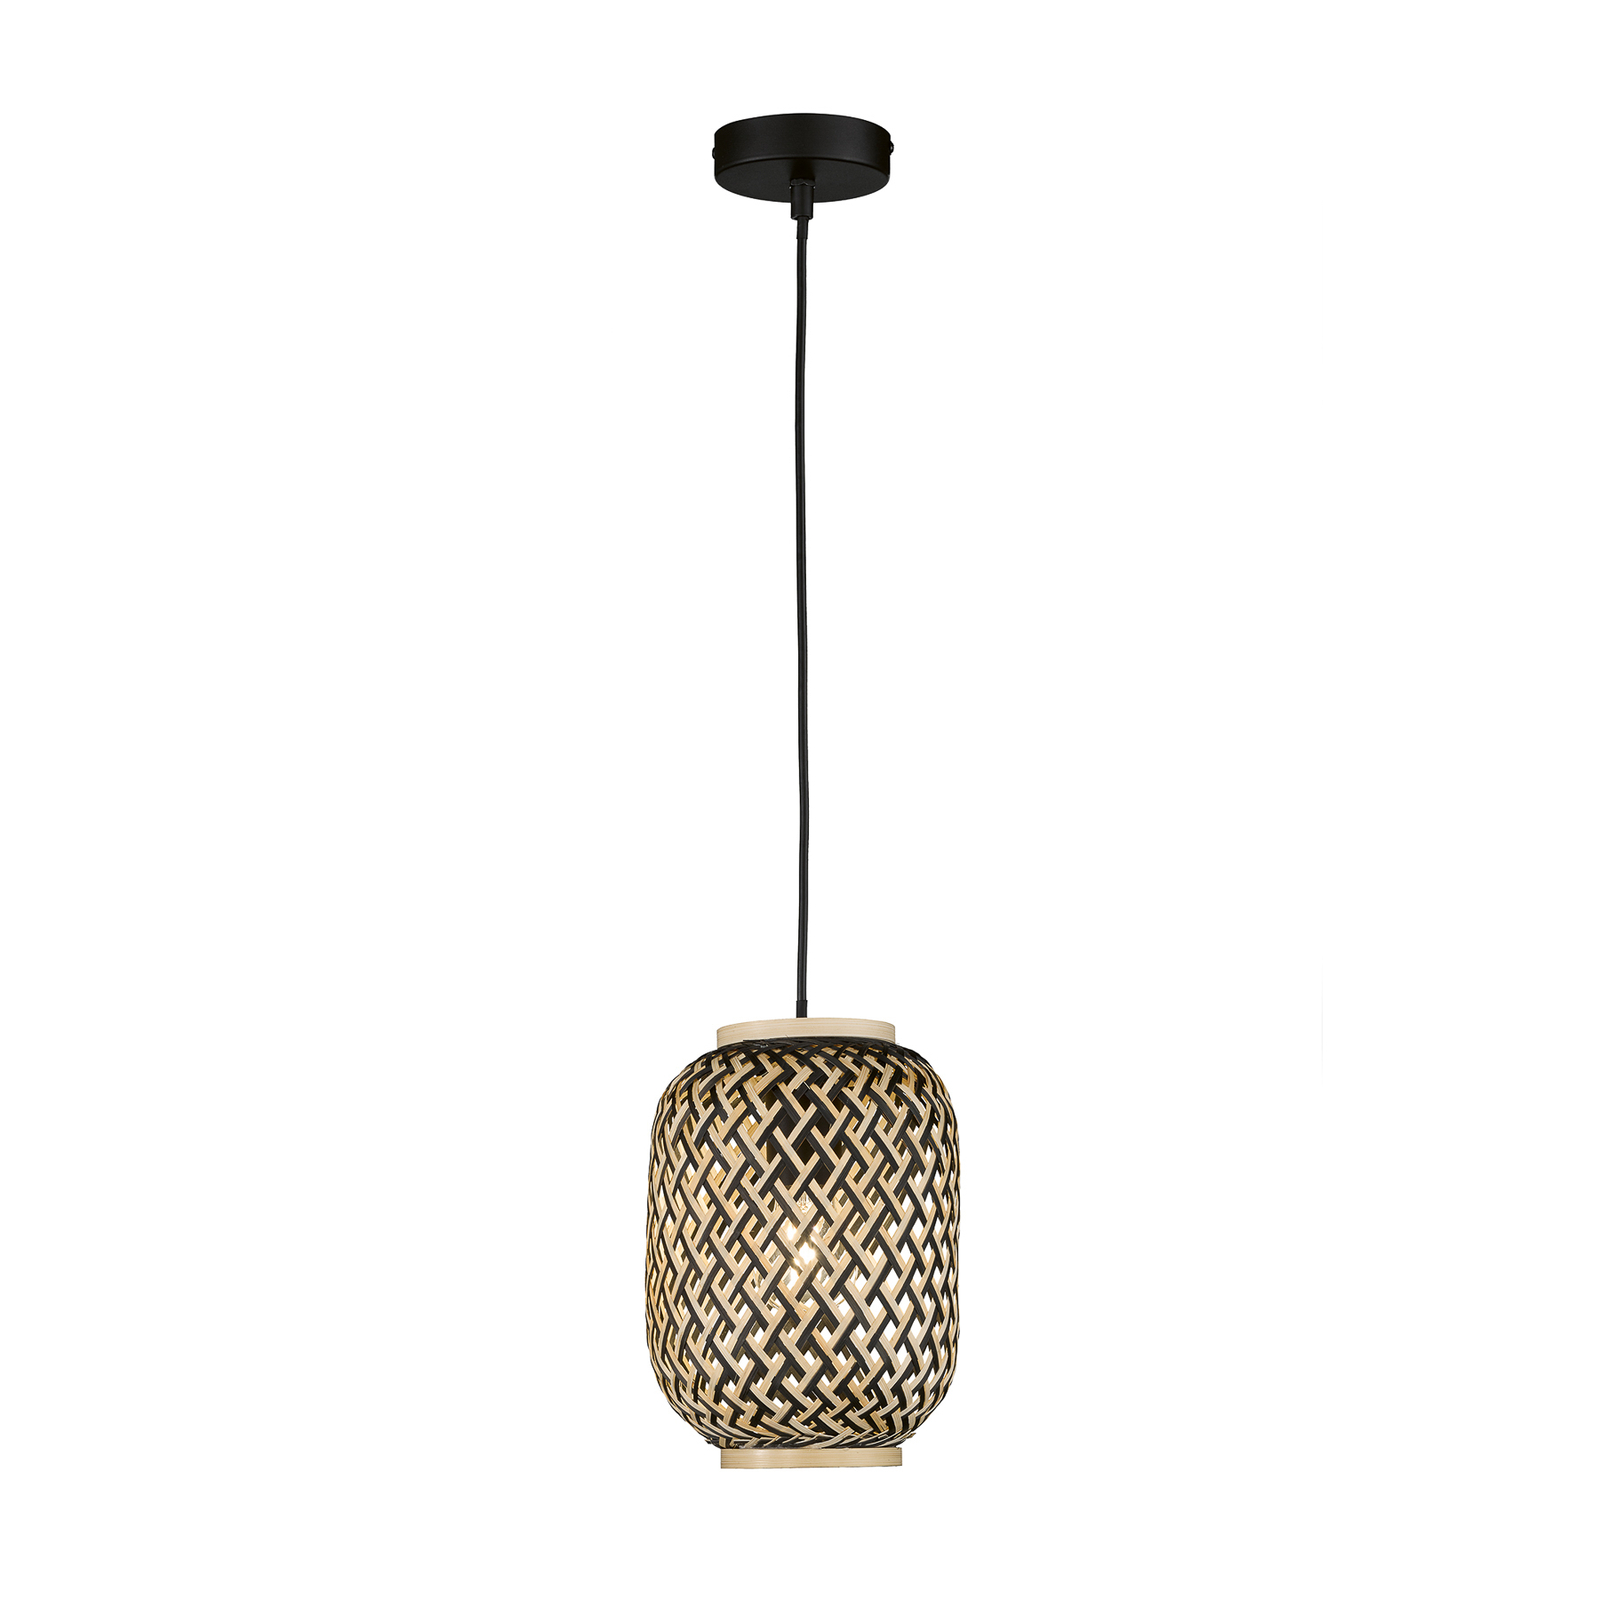 Hanglamp Hummel aus bamboe, 1-lamp